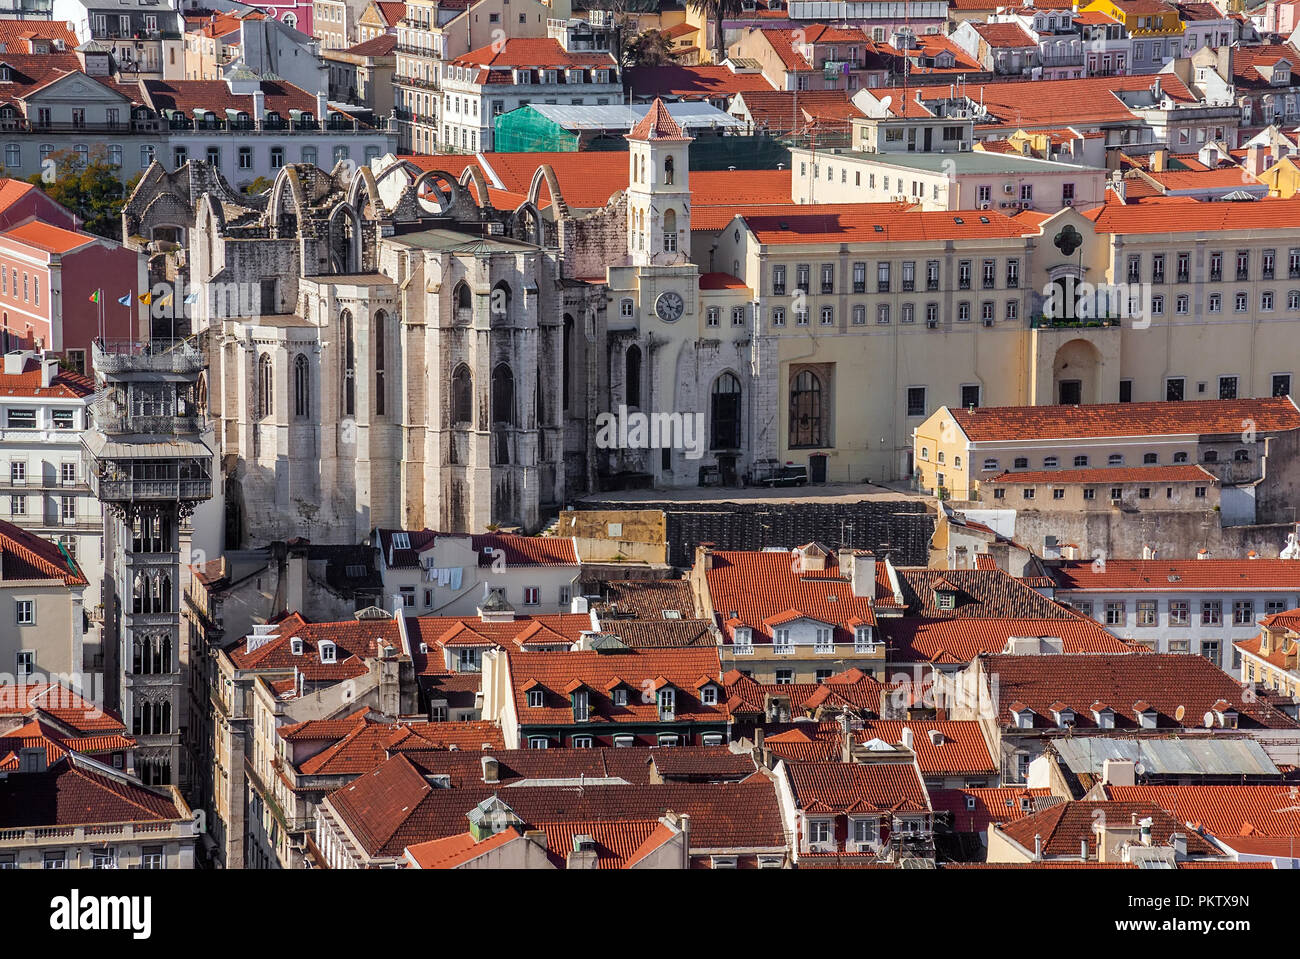 Ruines du couvent Carmo, ascenseur de Santa Justa ou de l'élévateur et orange toits du quartier de Baixa historique de Lisbonne, Portugal. Banque D'Images